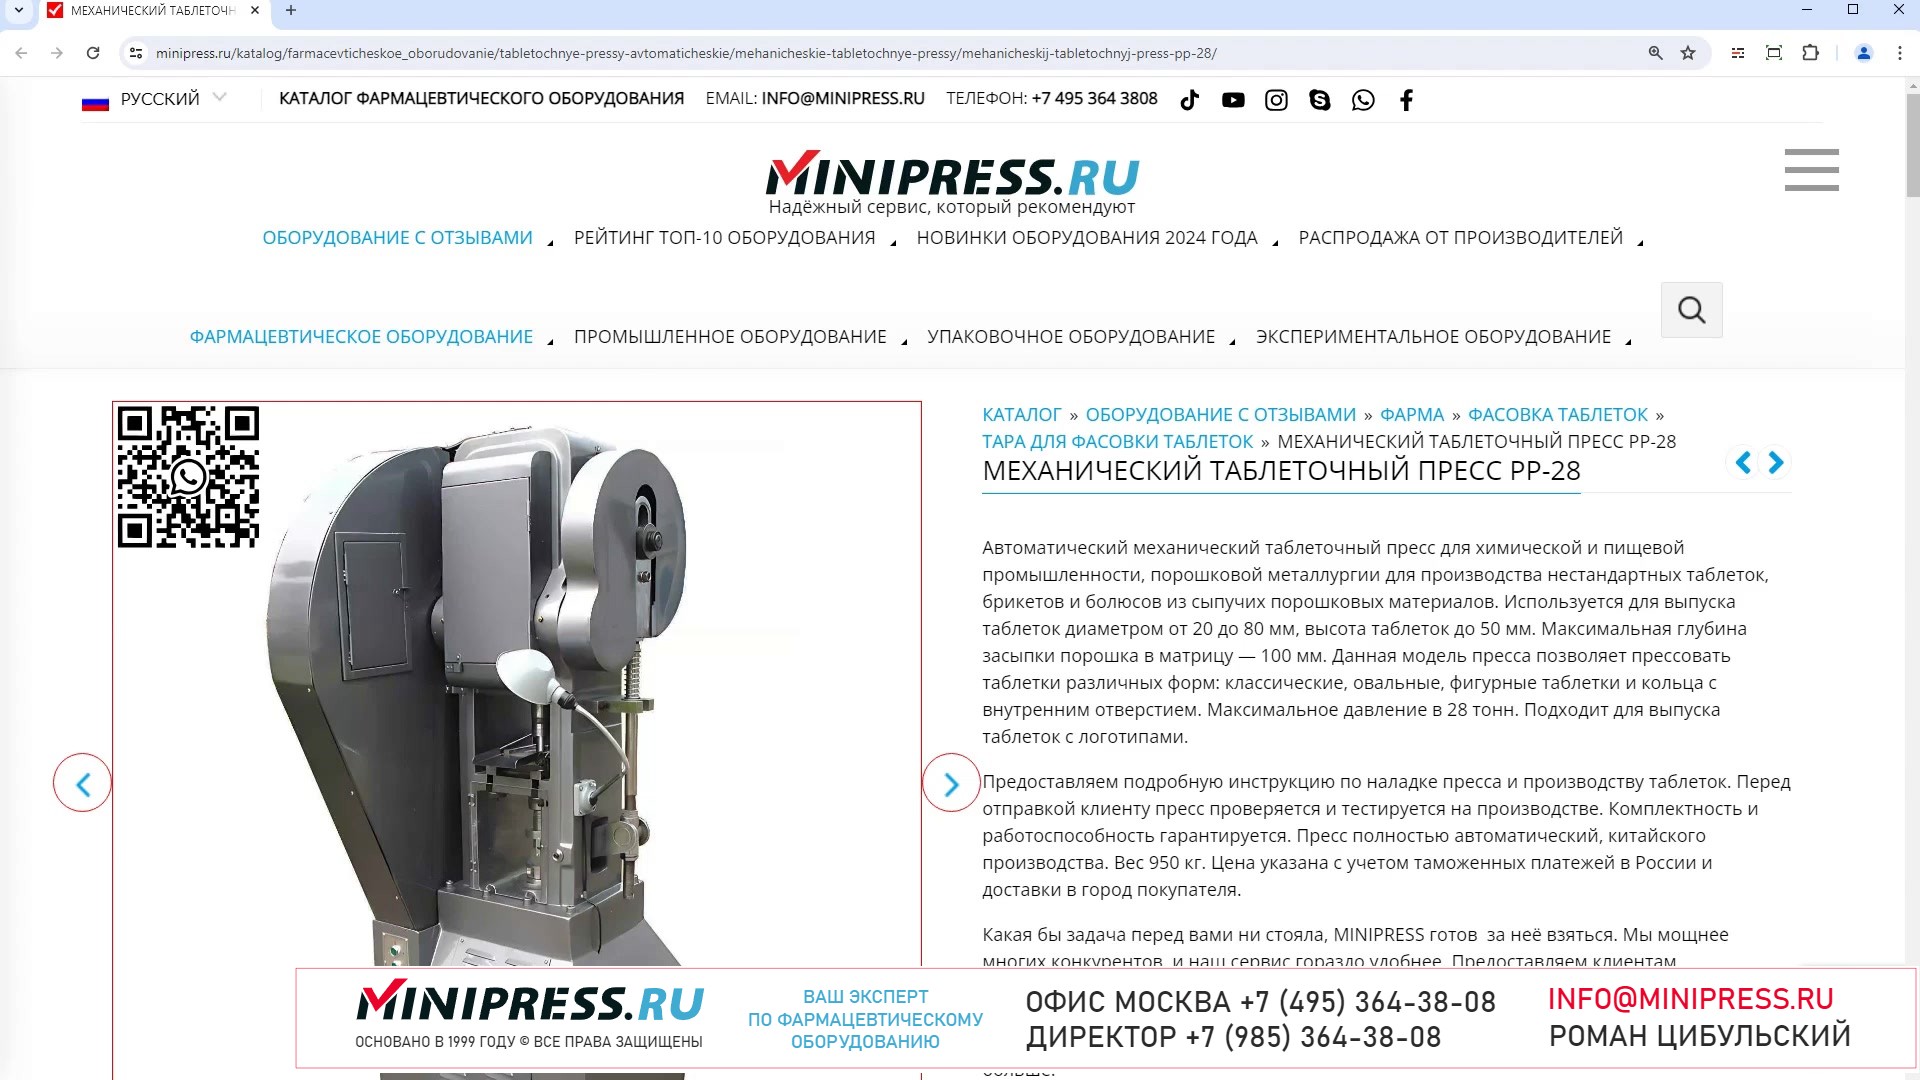 Minipress.ru Механический таблеточный пресс PP-28